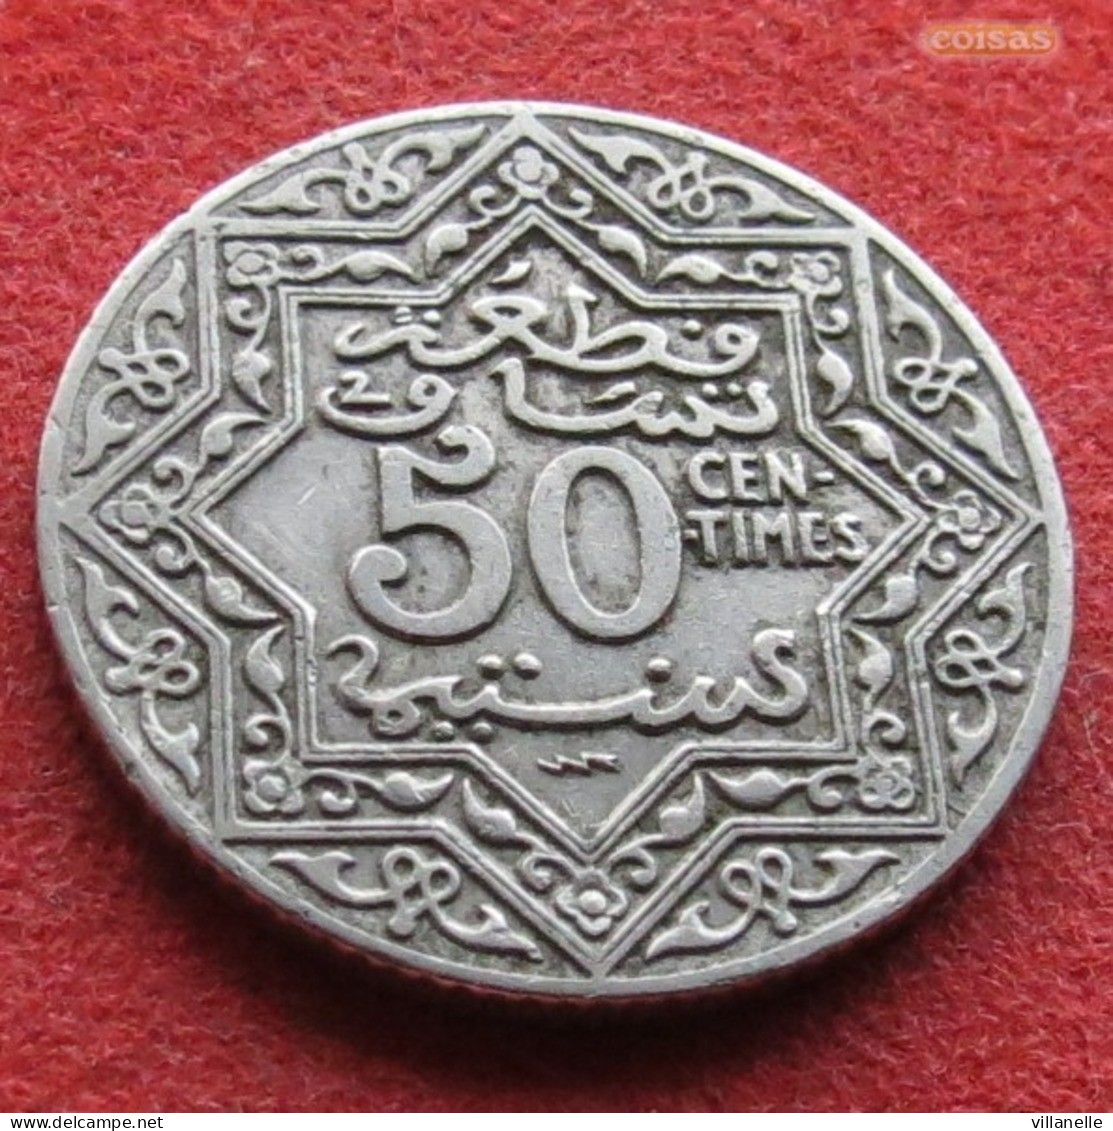 Morocco 50 Santimat 1924  Maroc Marrocos Marokko Marruecos W ºº - Morocco